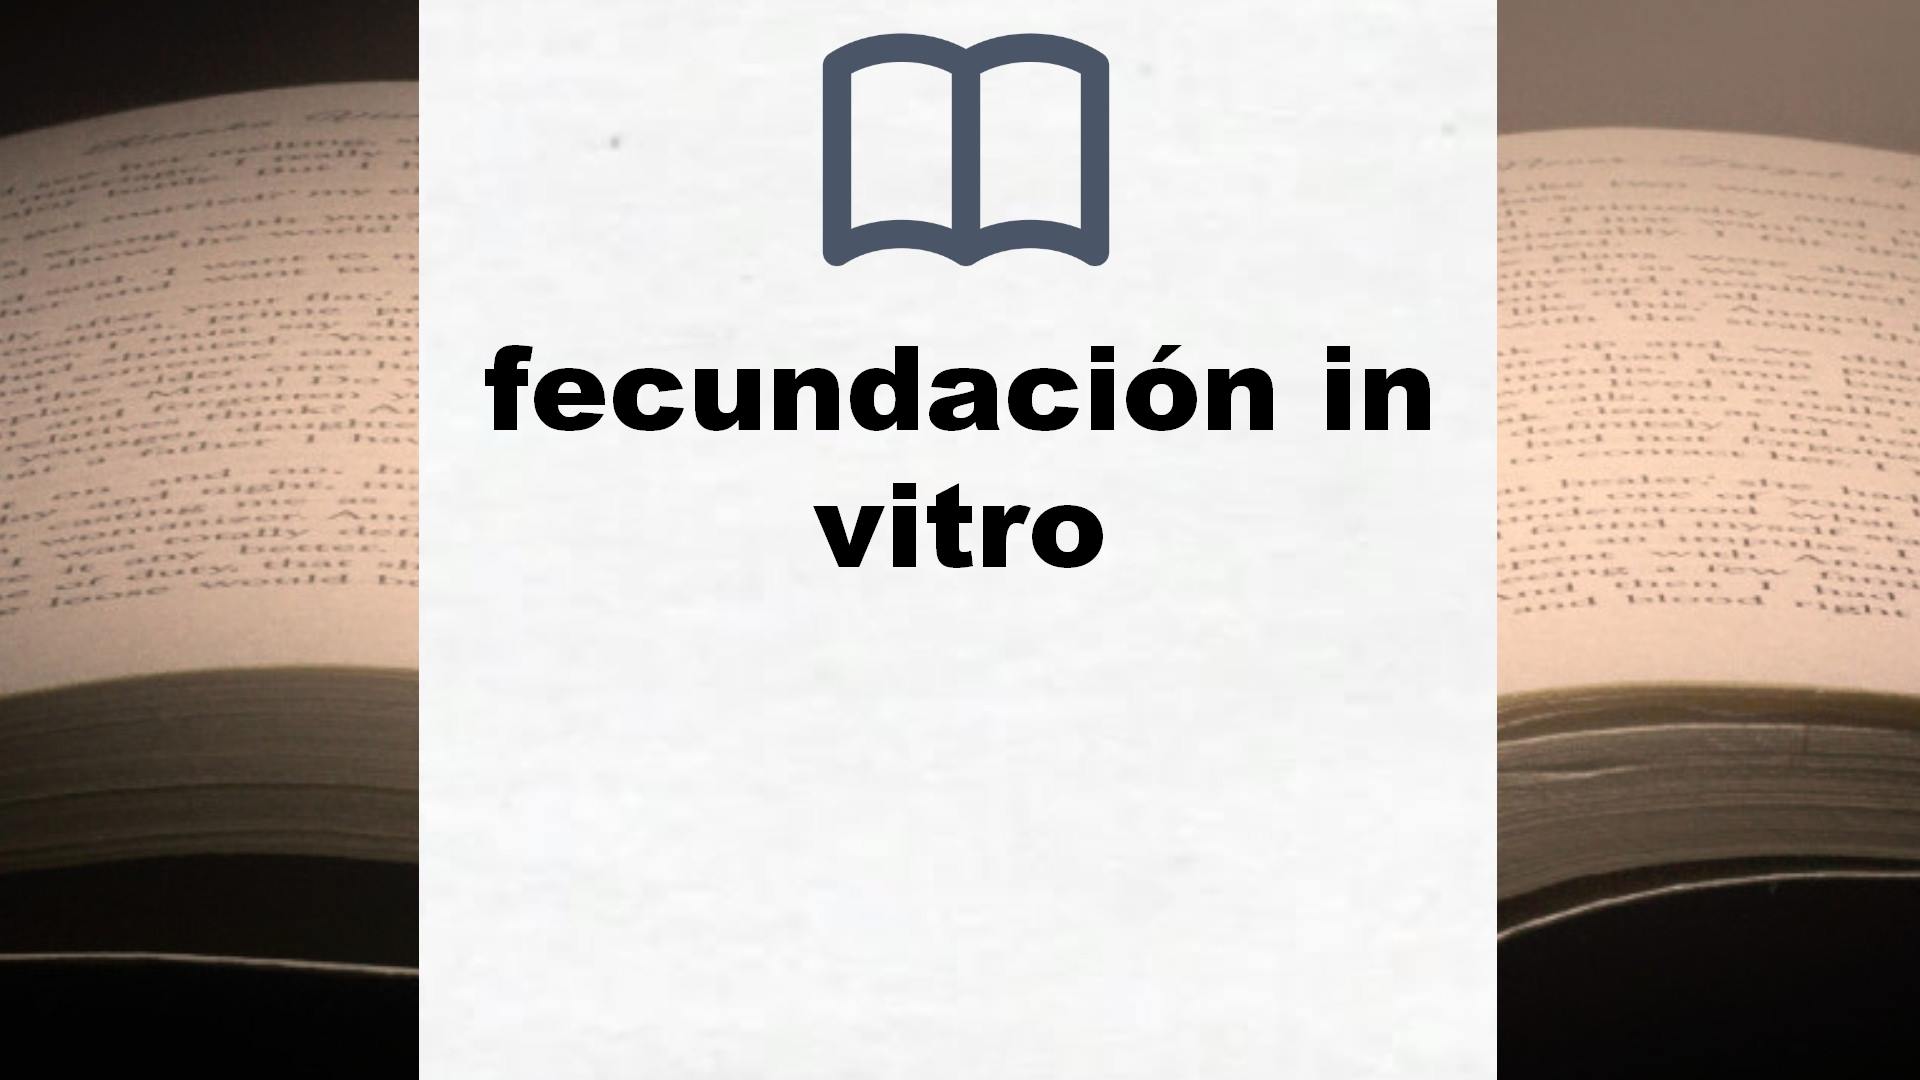 Libros sobre fecundación in vitro